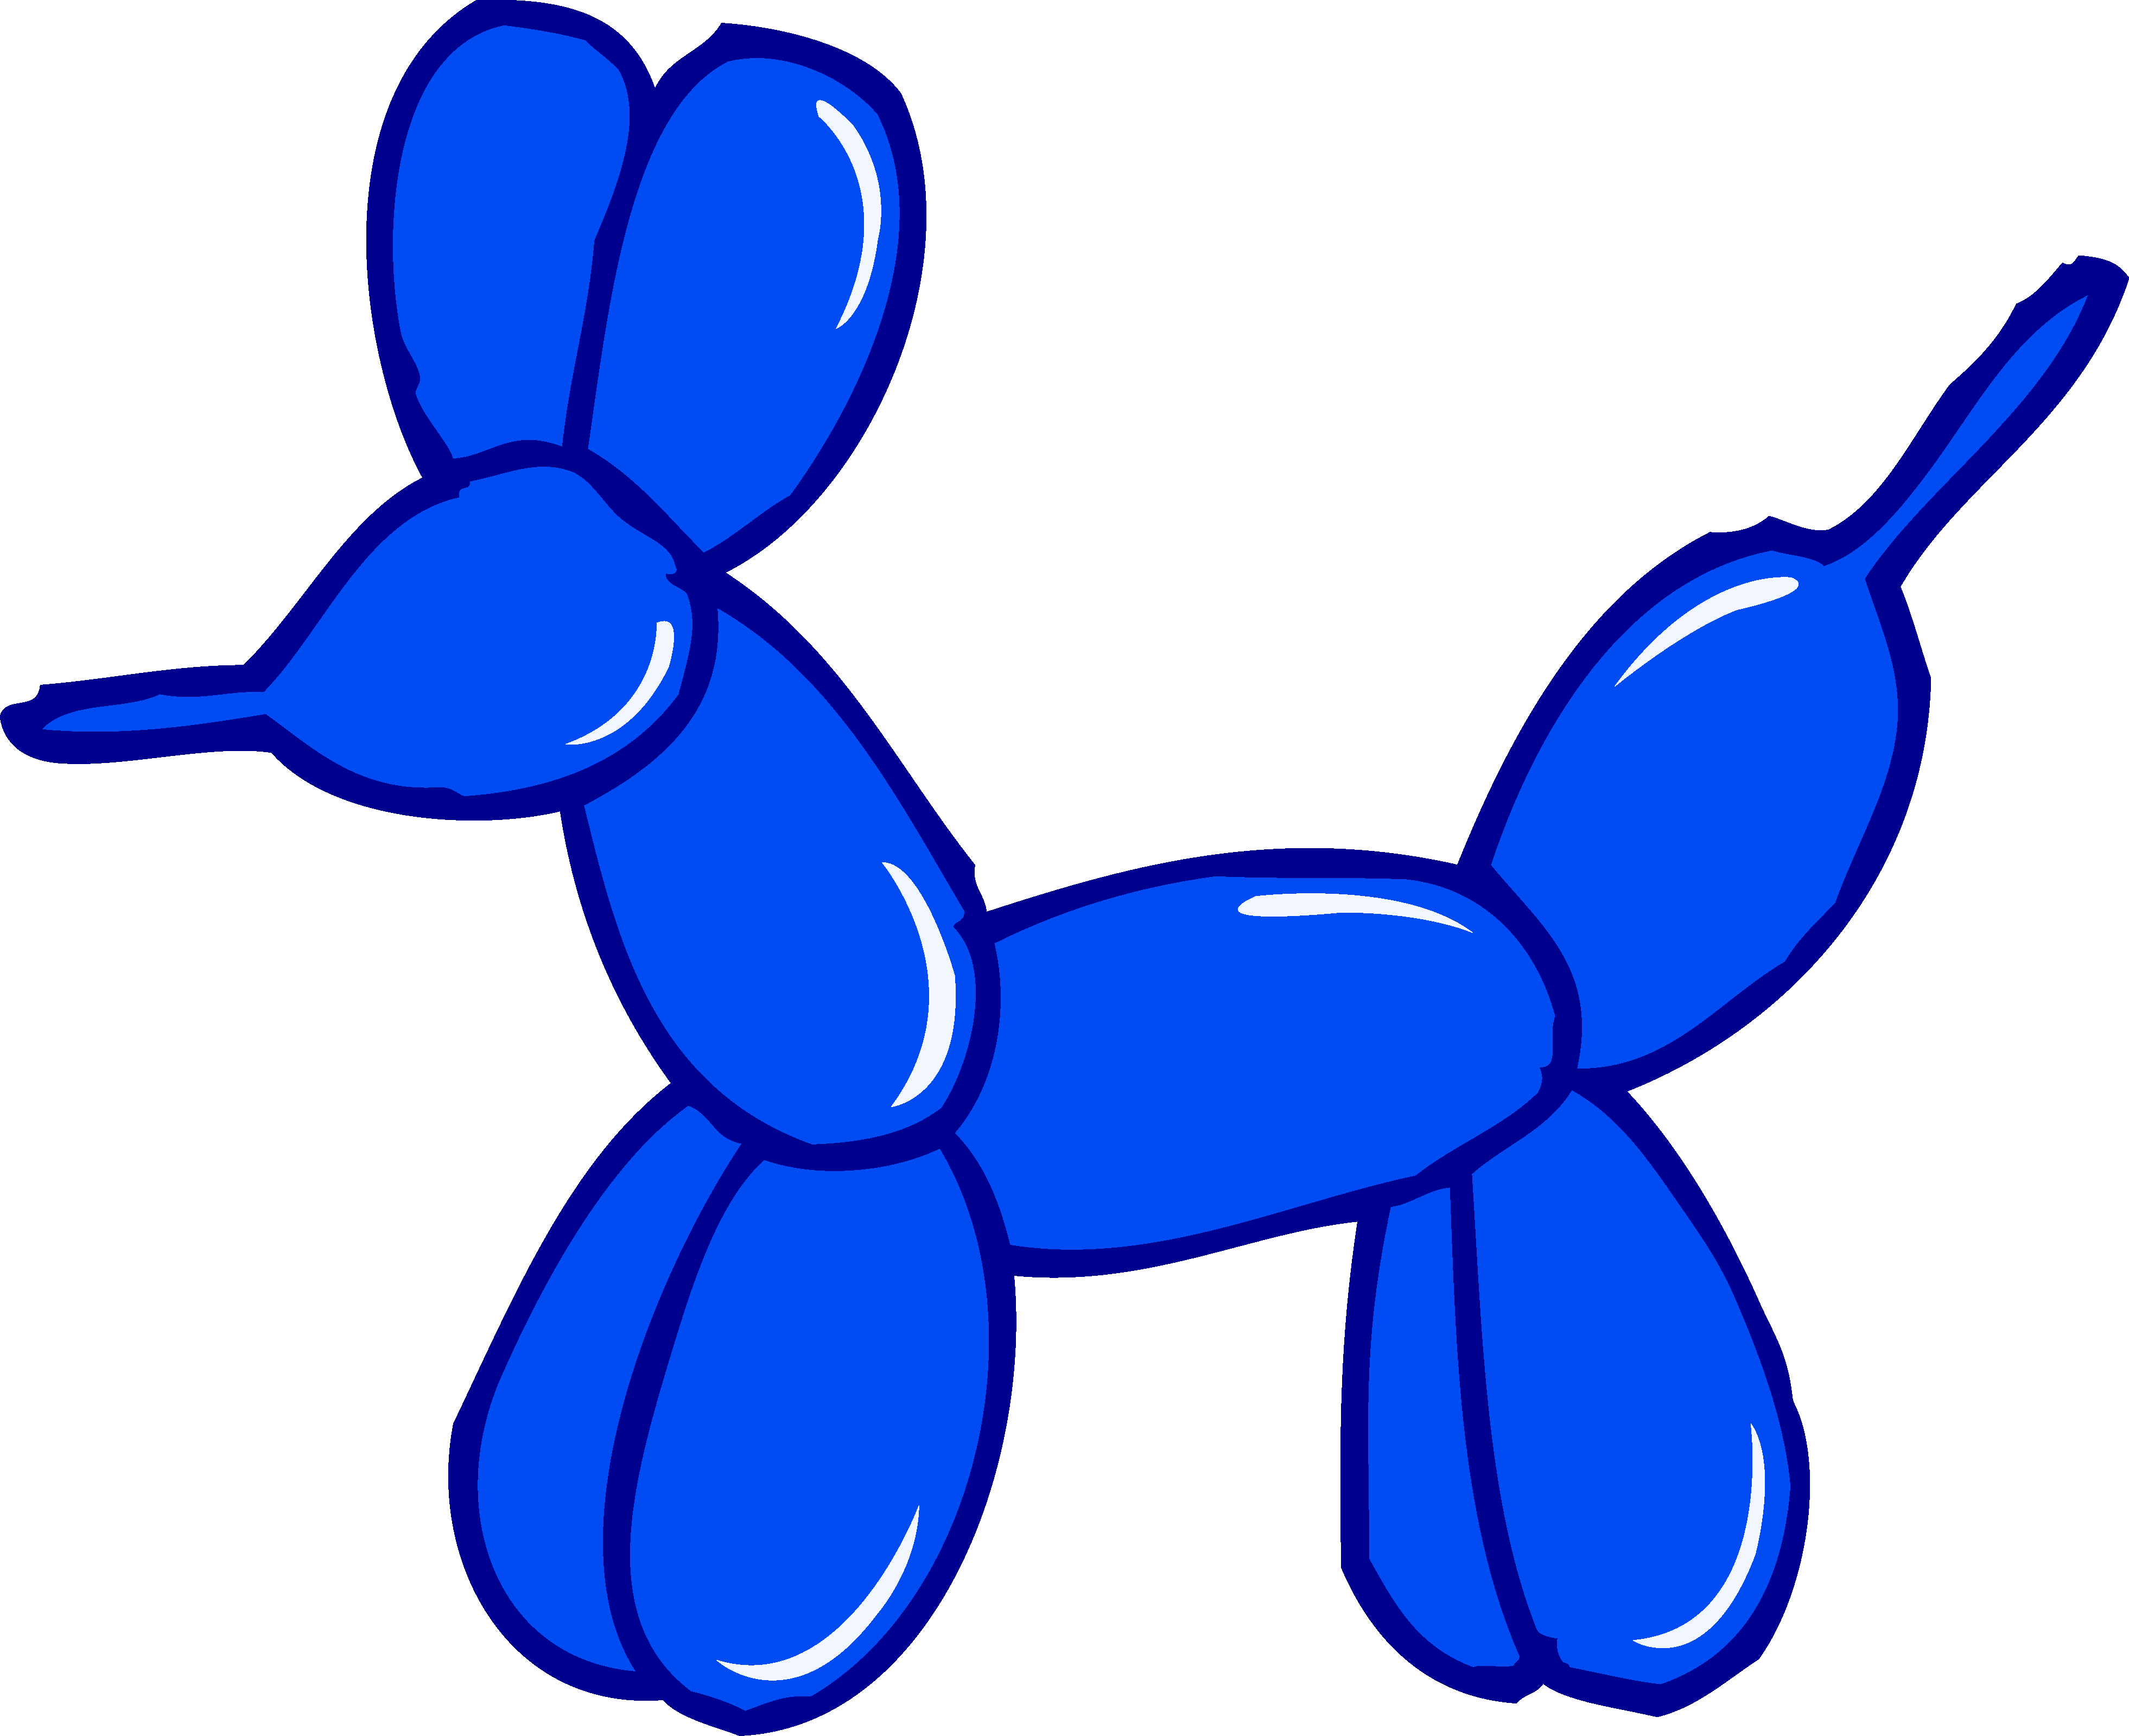 Clipart balloon silhouette. Cute blue animal free